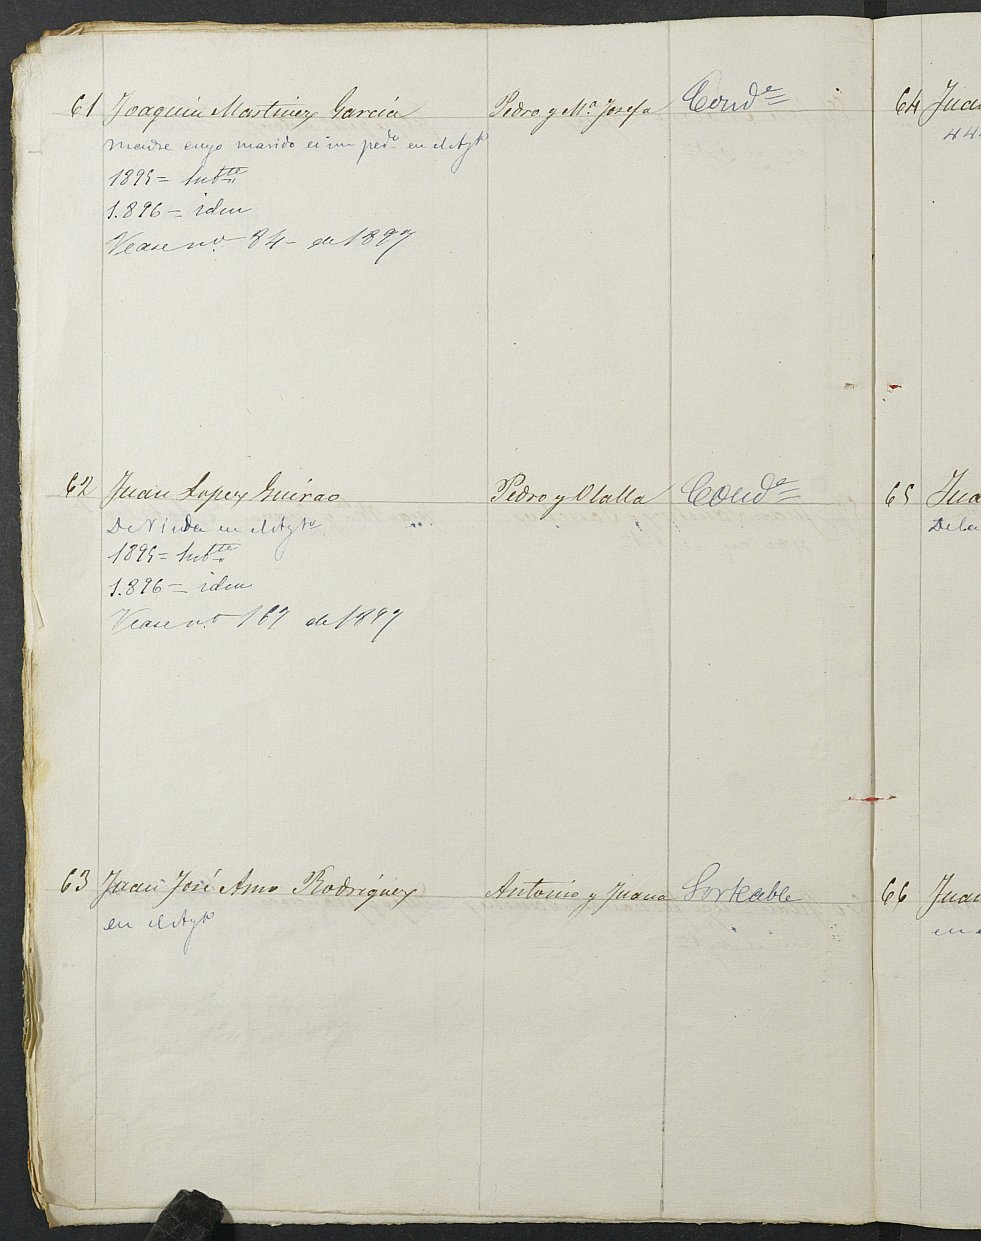 Relación de individuos declarados soldados e ingresados en Caja del Ayuntamiento de Moratalla de 1894.